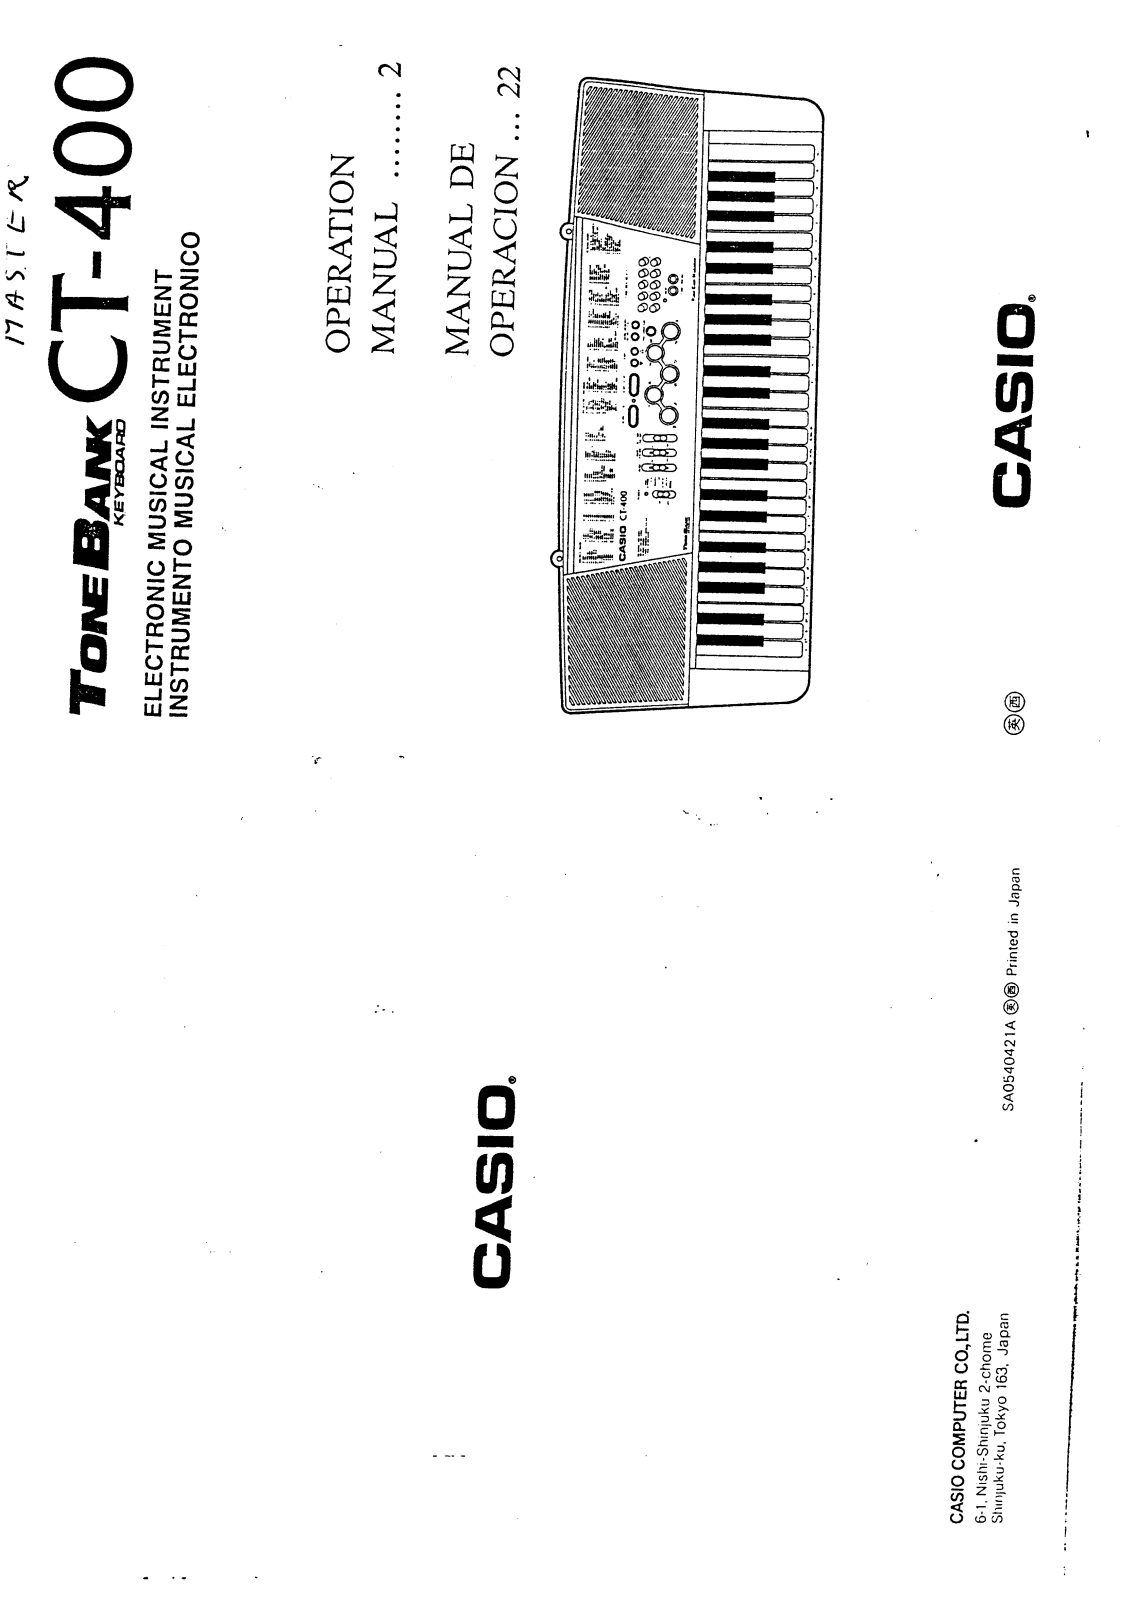 Casio CT-400 User Manual